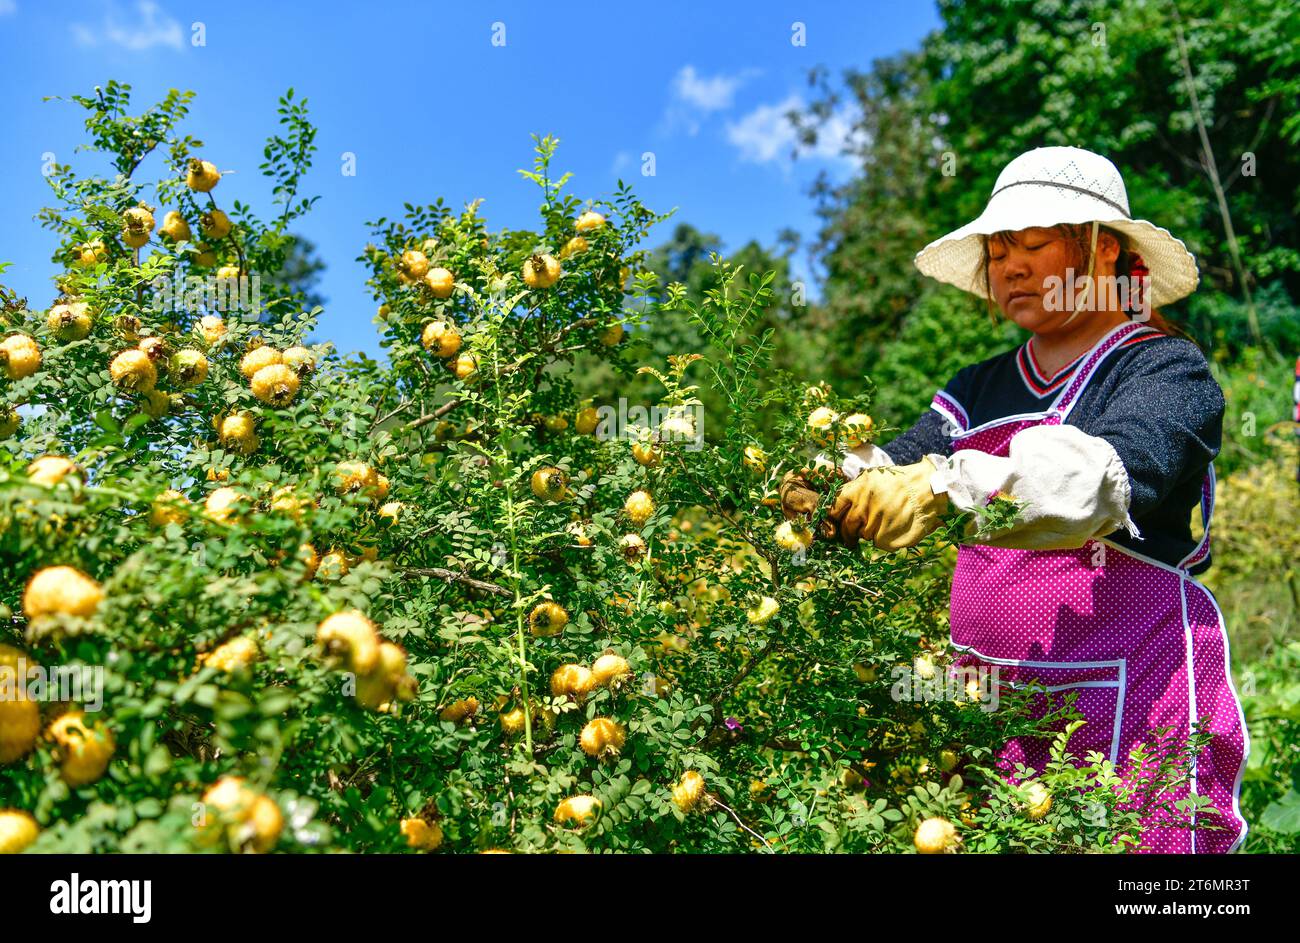 (231111) -- GUIYANG, 11. November 2023 (Xinhua) -- Ein Bauer sammelt Cili-Früchte im Dorf Chaxiang im County Longli, südwestchinesische Provinz Guizhou, 1. September 2023. Cili (Rosa roxburghii), was auf Chinesisch „Dornbirne“ bedeutet, ist eine gelbliche, stachelige Frucht, die für ihren reichen Vitamin-C-Gehalt und verschiedene Ernährungsvorteile bekannt ist. Diese unverwechselbare Frucht ist ein Markenprodukt der Bergregionen im Südwesten Chinas in Guizhou. Derzeit ist die Cili-Produktion ein wichtiger Faktor bei der Förderung der ländlichen Revitalisierung im Longli County, Provinz Guizhou. Das Anbaugebiet der Cili wurde erweitert Stockfoto